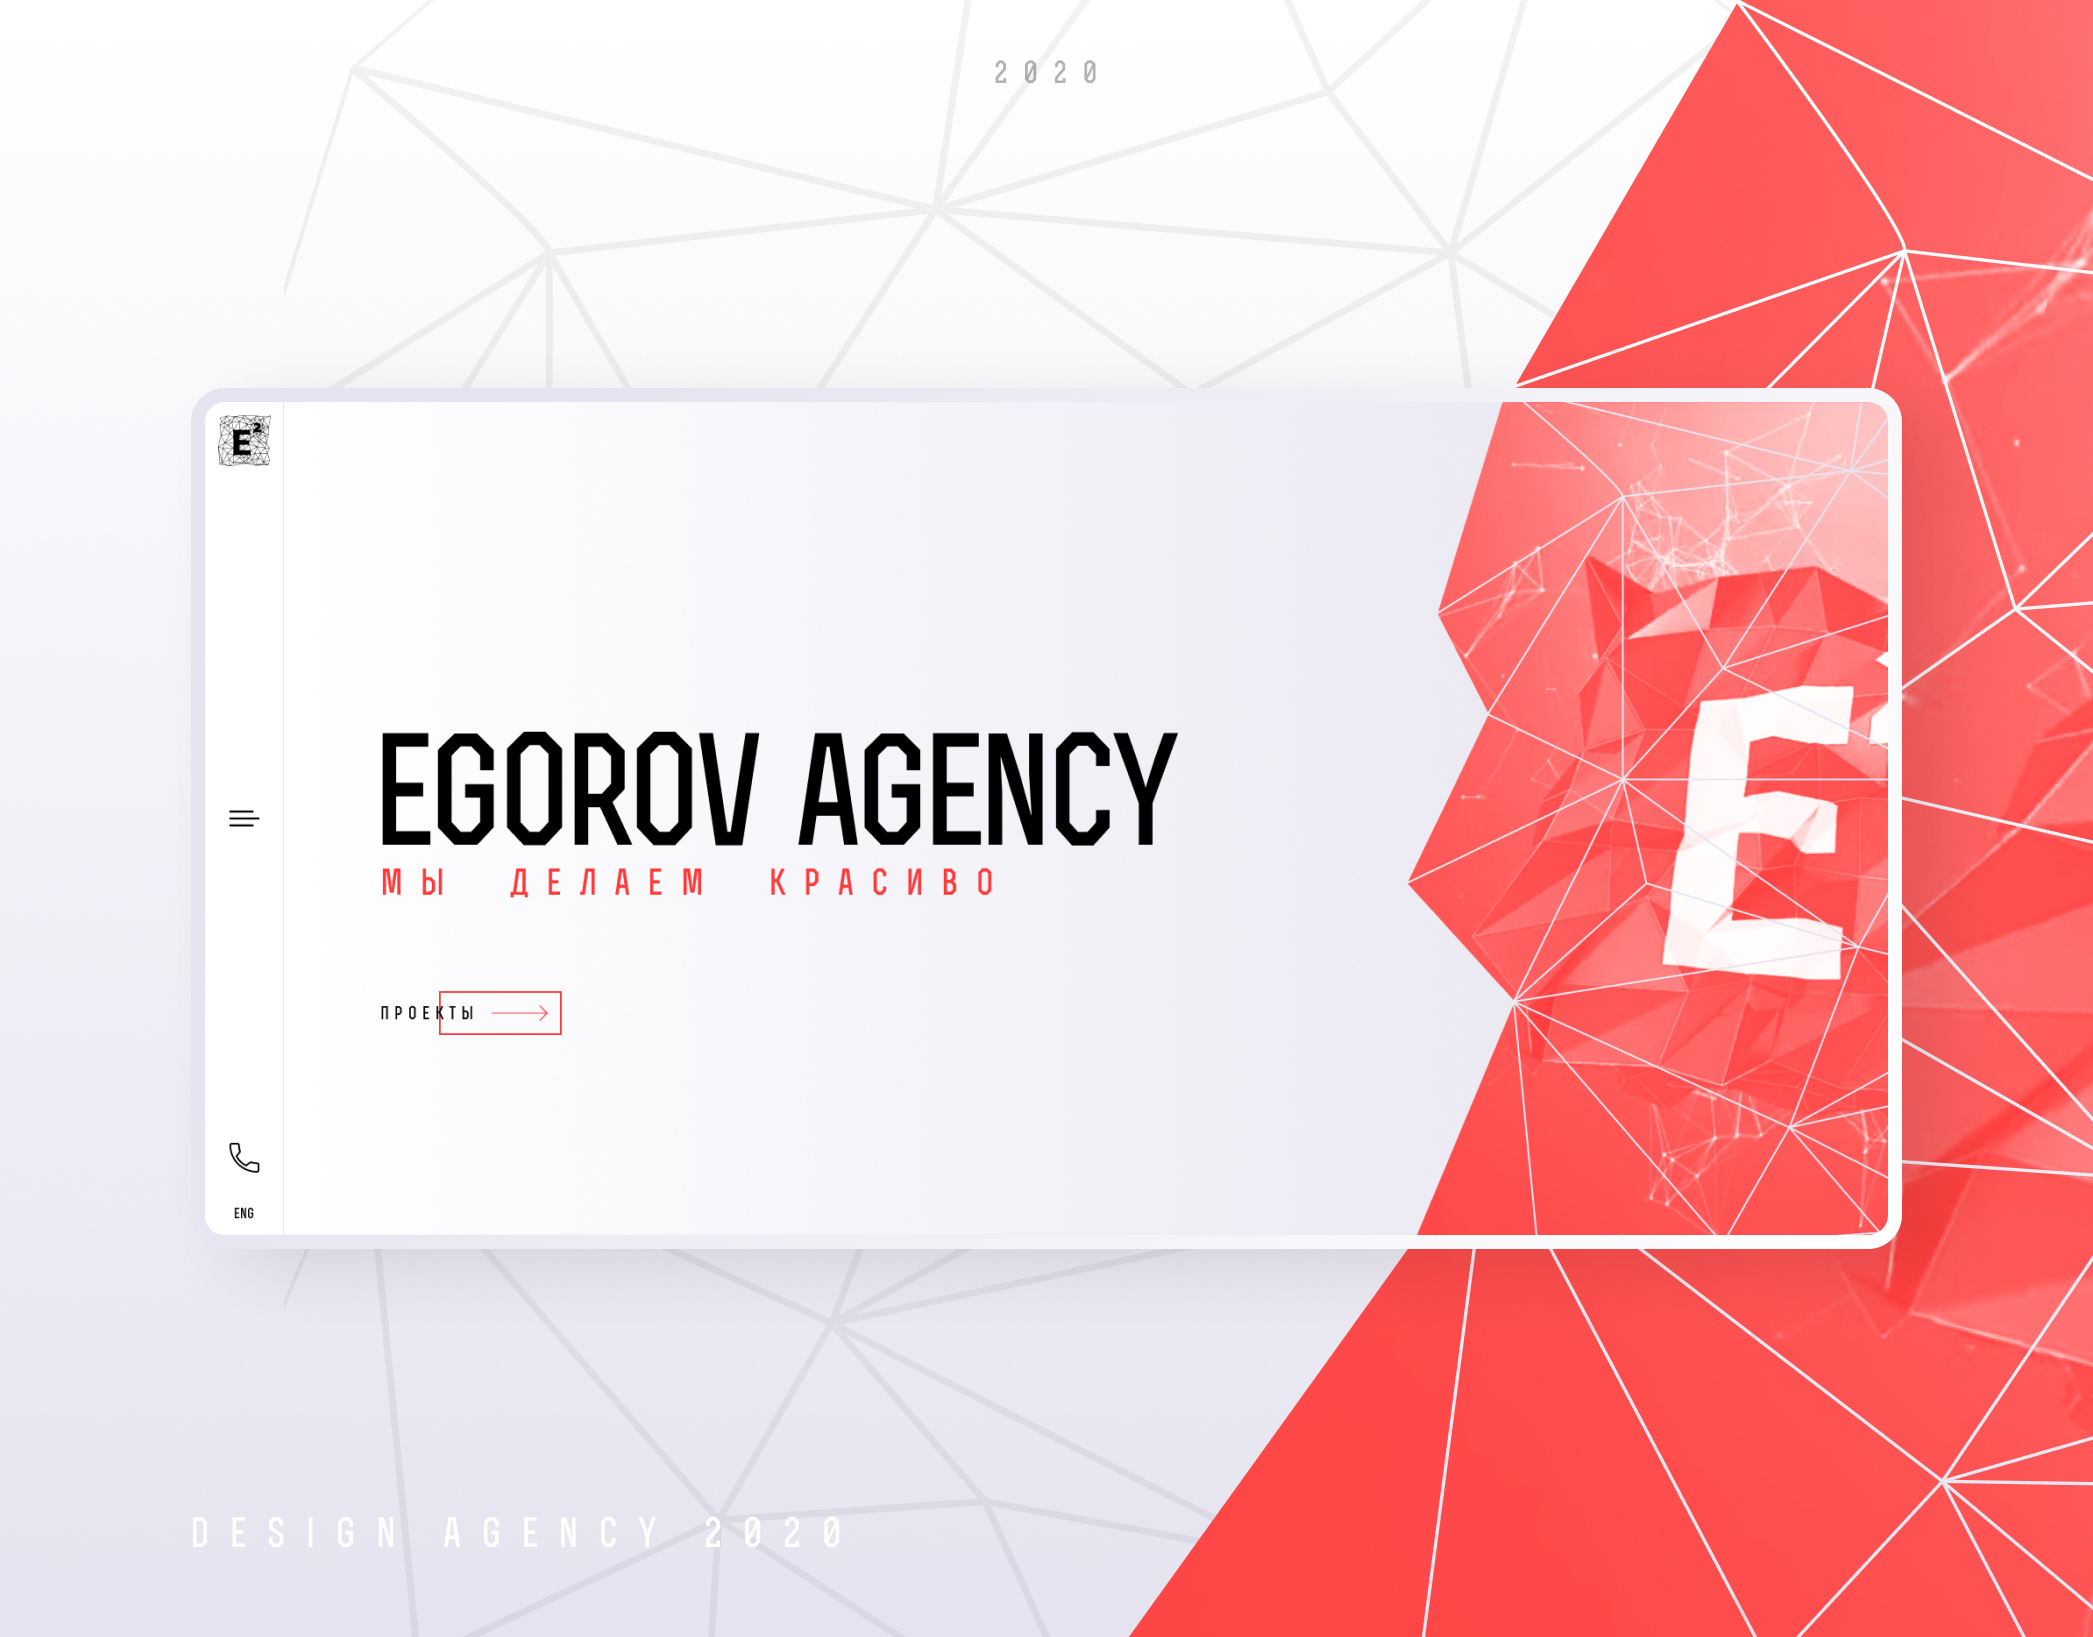 Egorov Agency | Corporate website